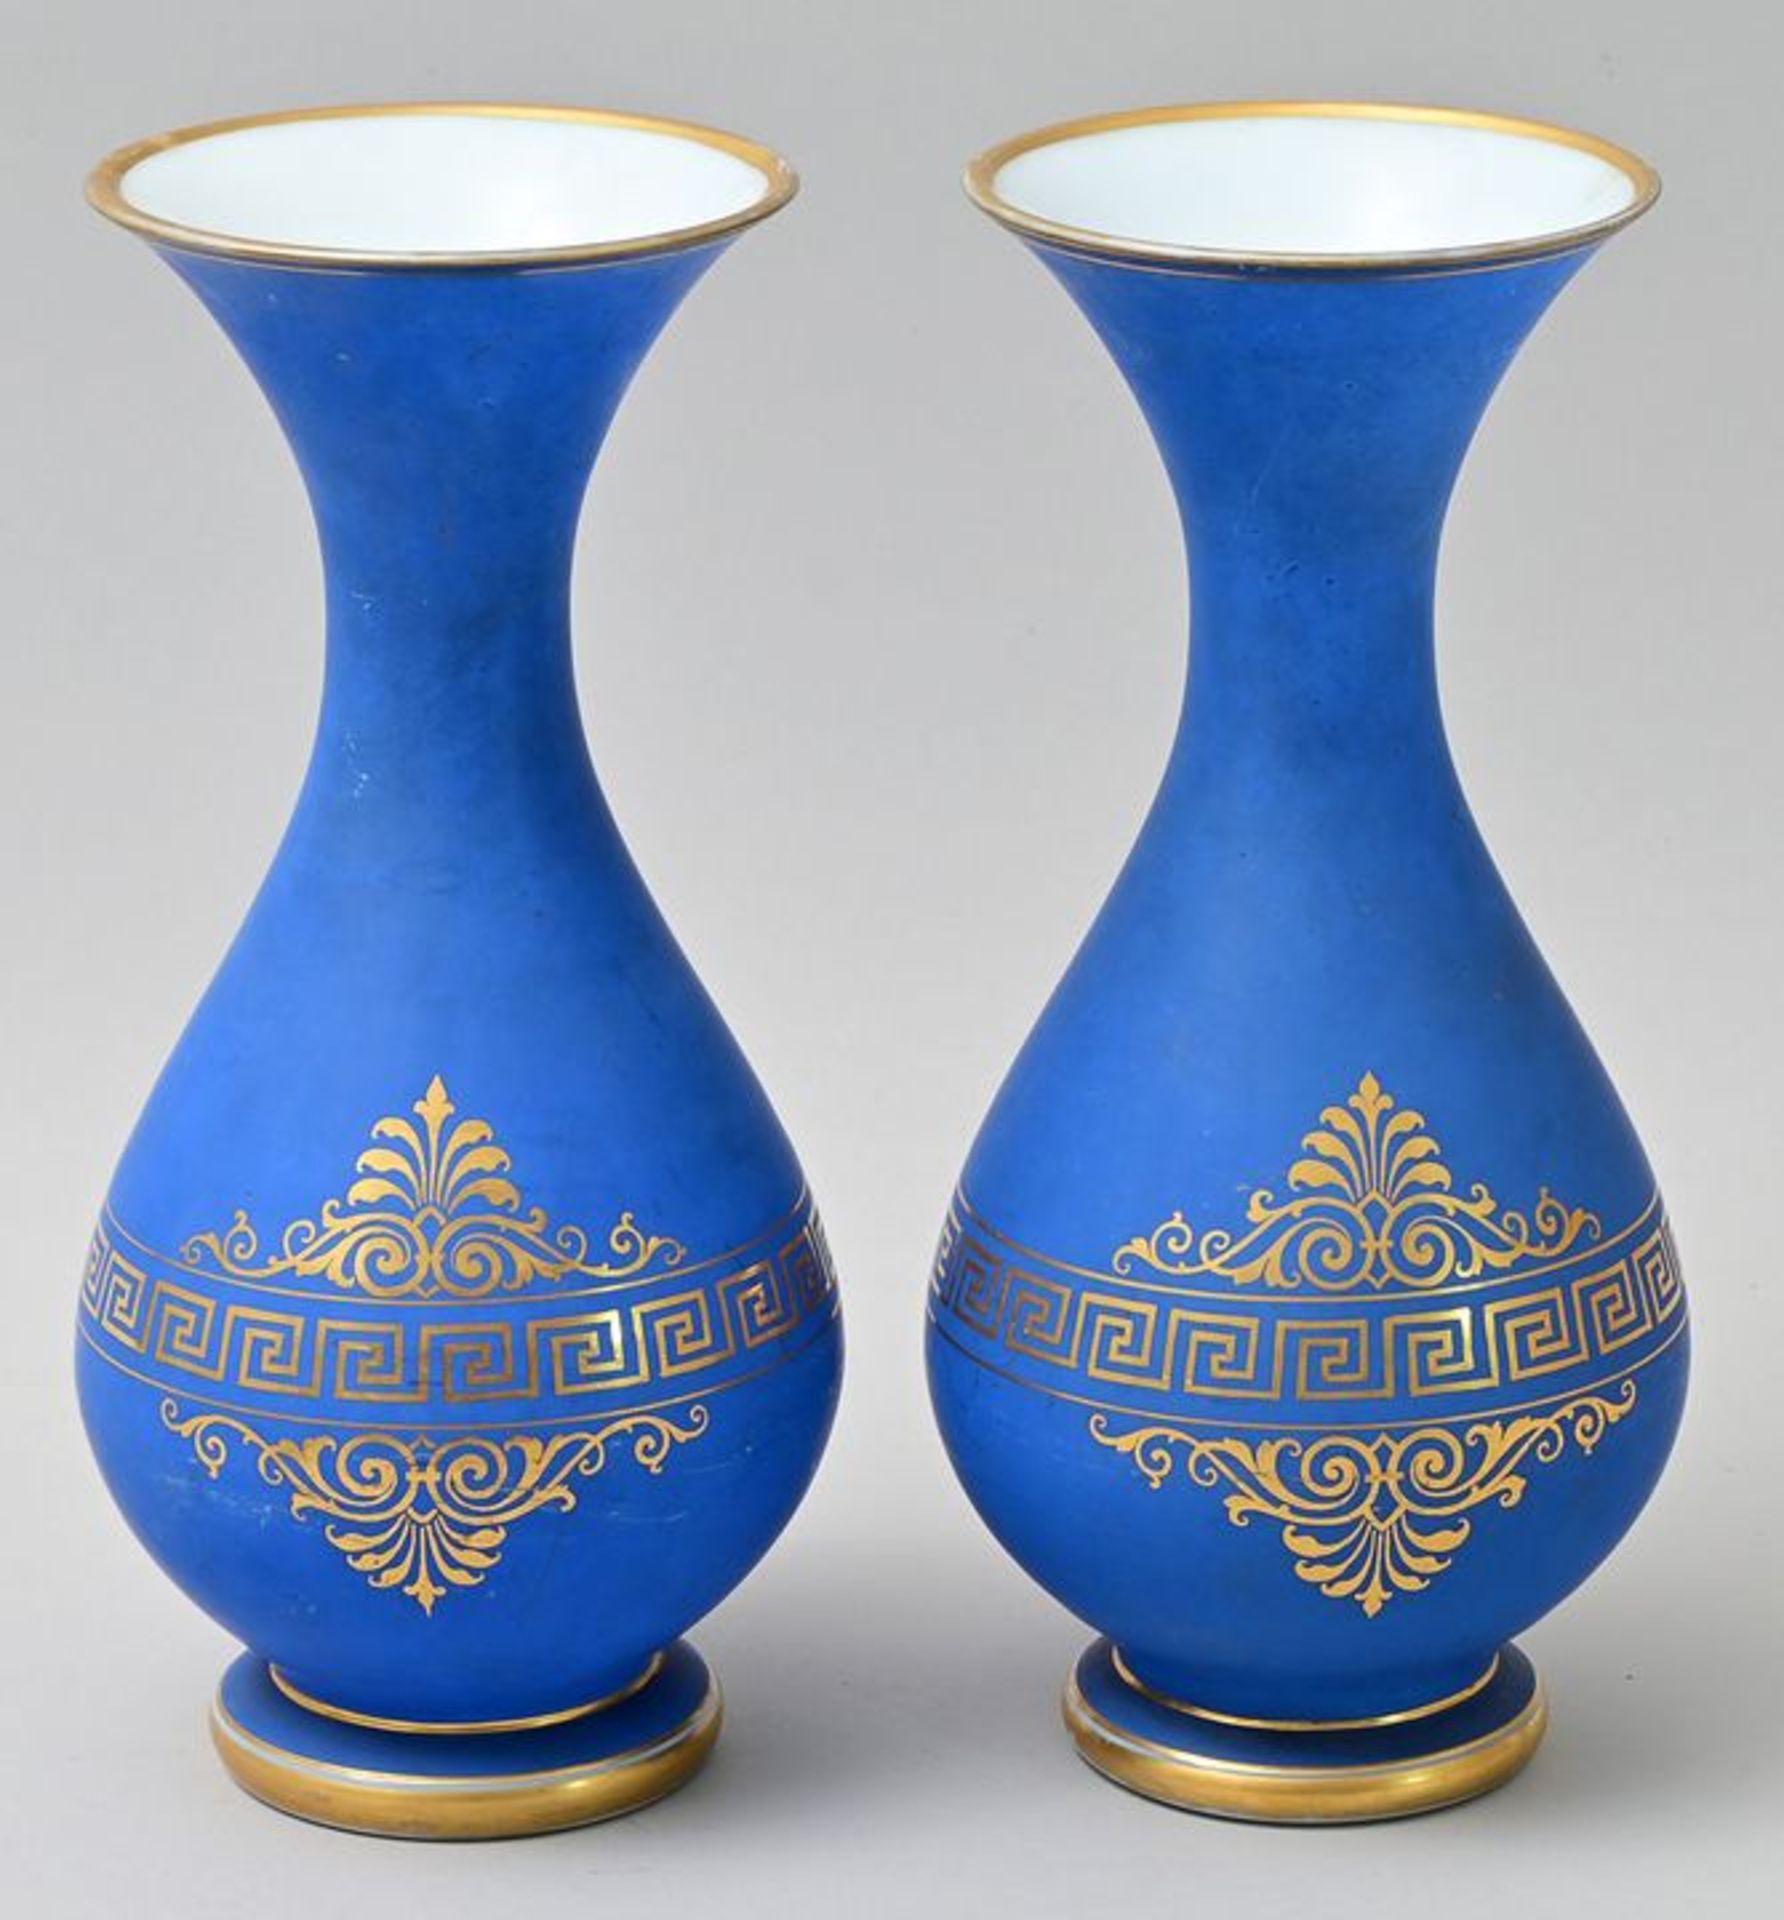 Paar Vasen/ vases - Image 3 of 3